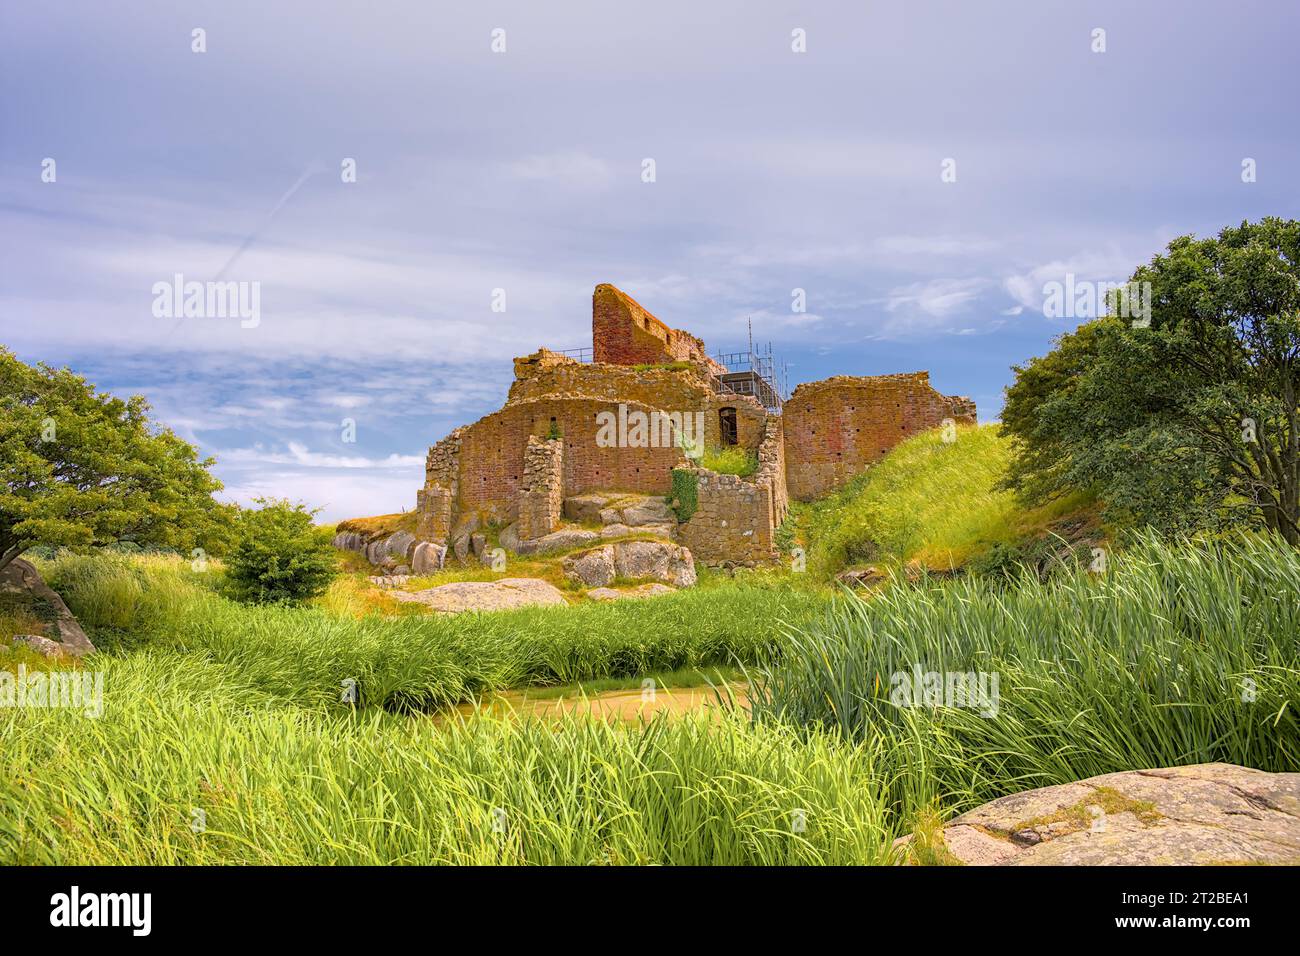 Le rovine dell'antico castello di Hammershus a nord di Bornholm, Danimarca Foto Stock